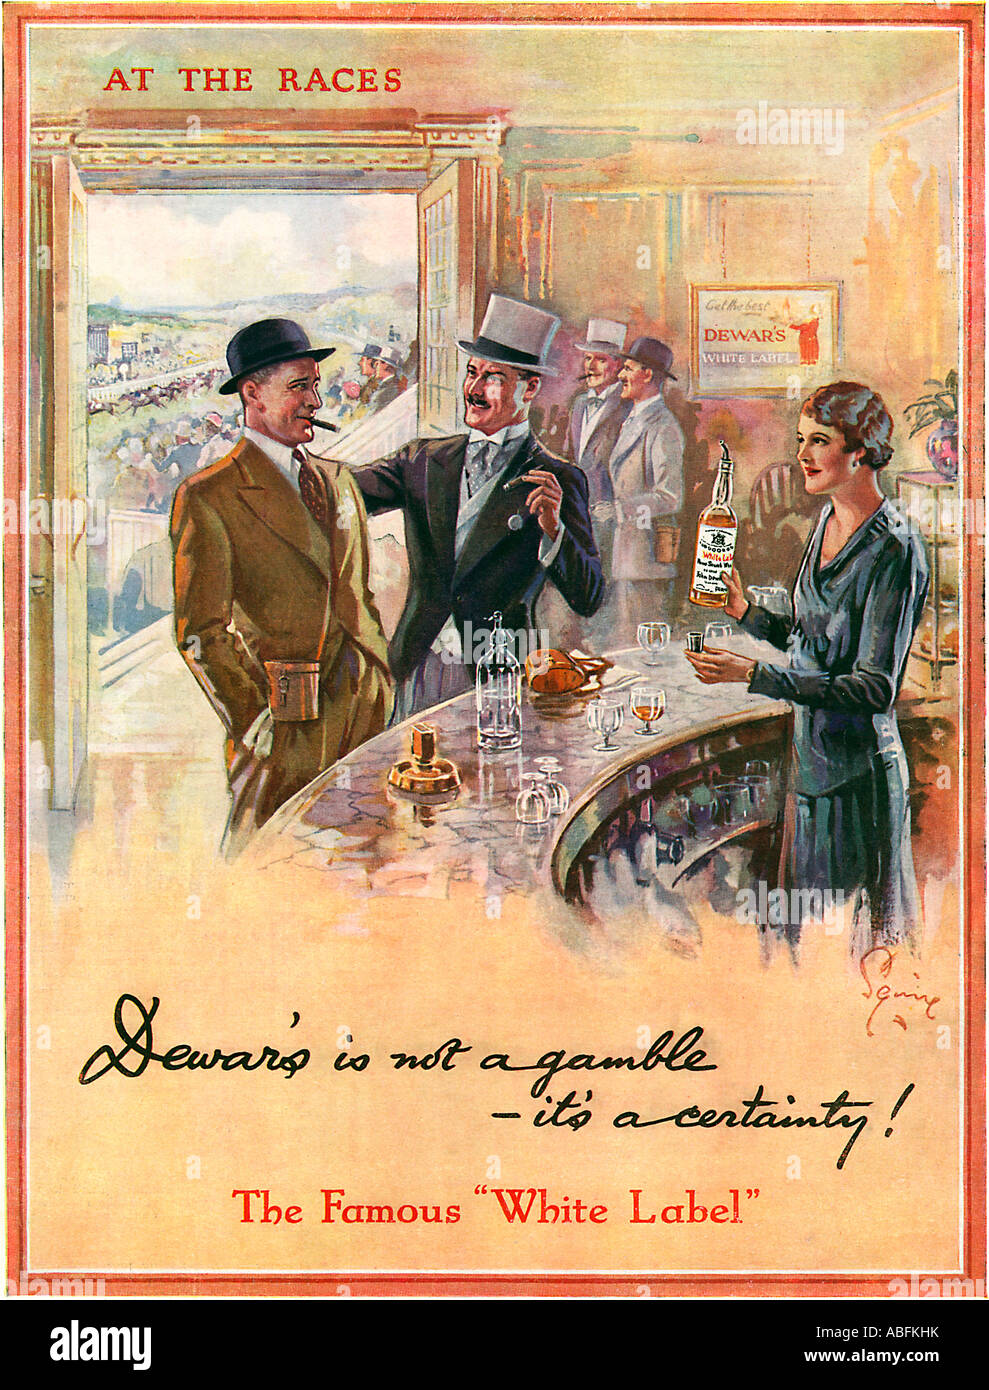 Cryostats aux courses 1933 annonce pour la White Label Scotch whisky un pari pas ses une certitude Banque D'Images